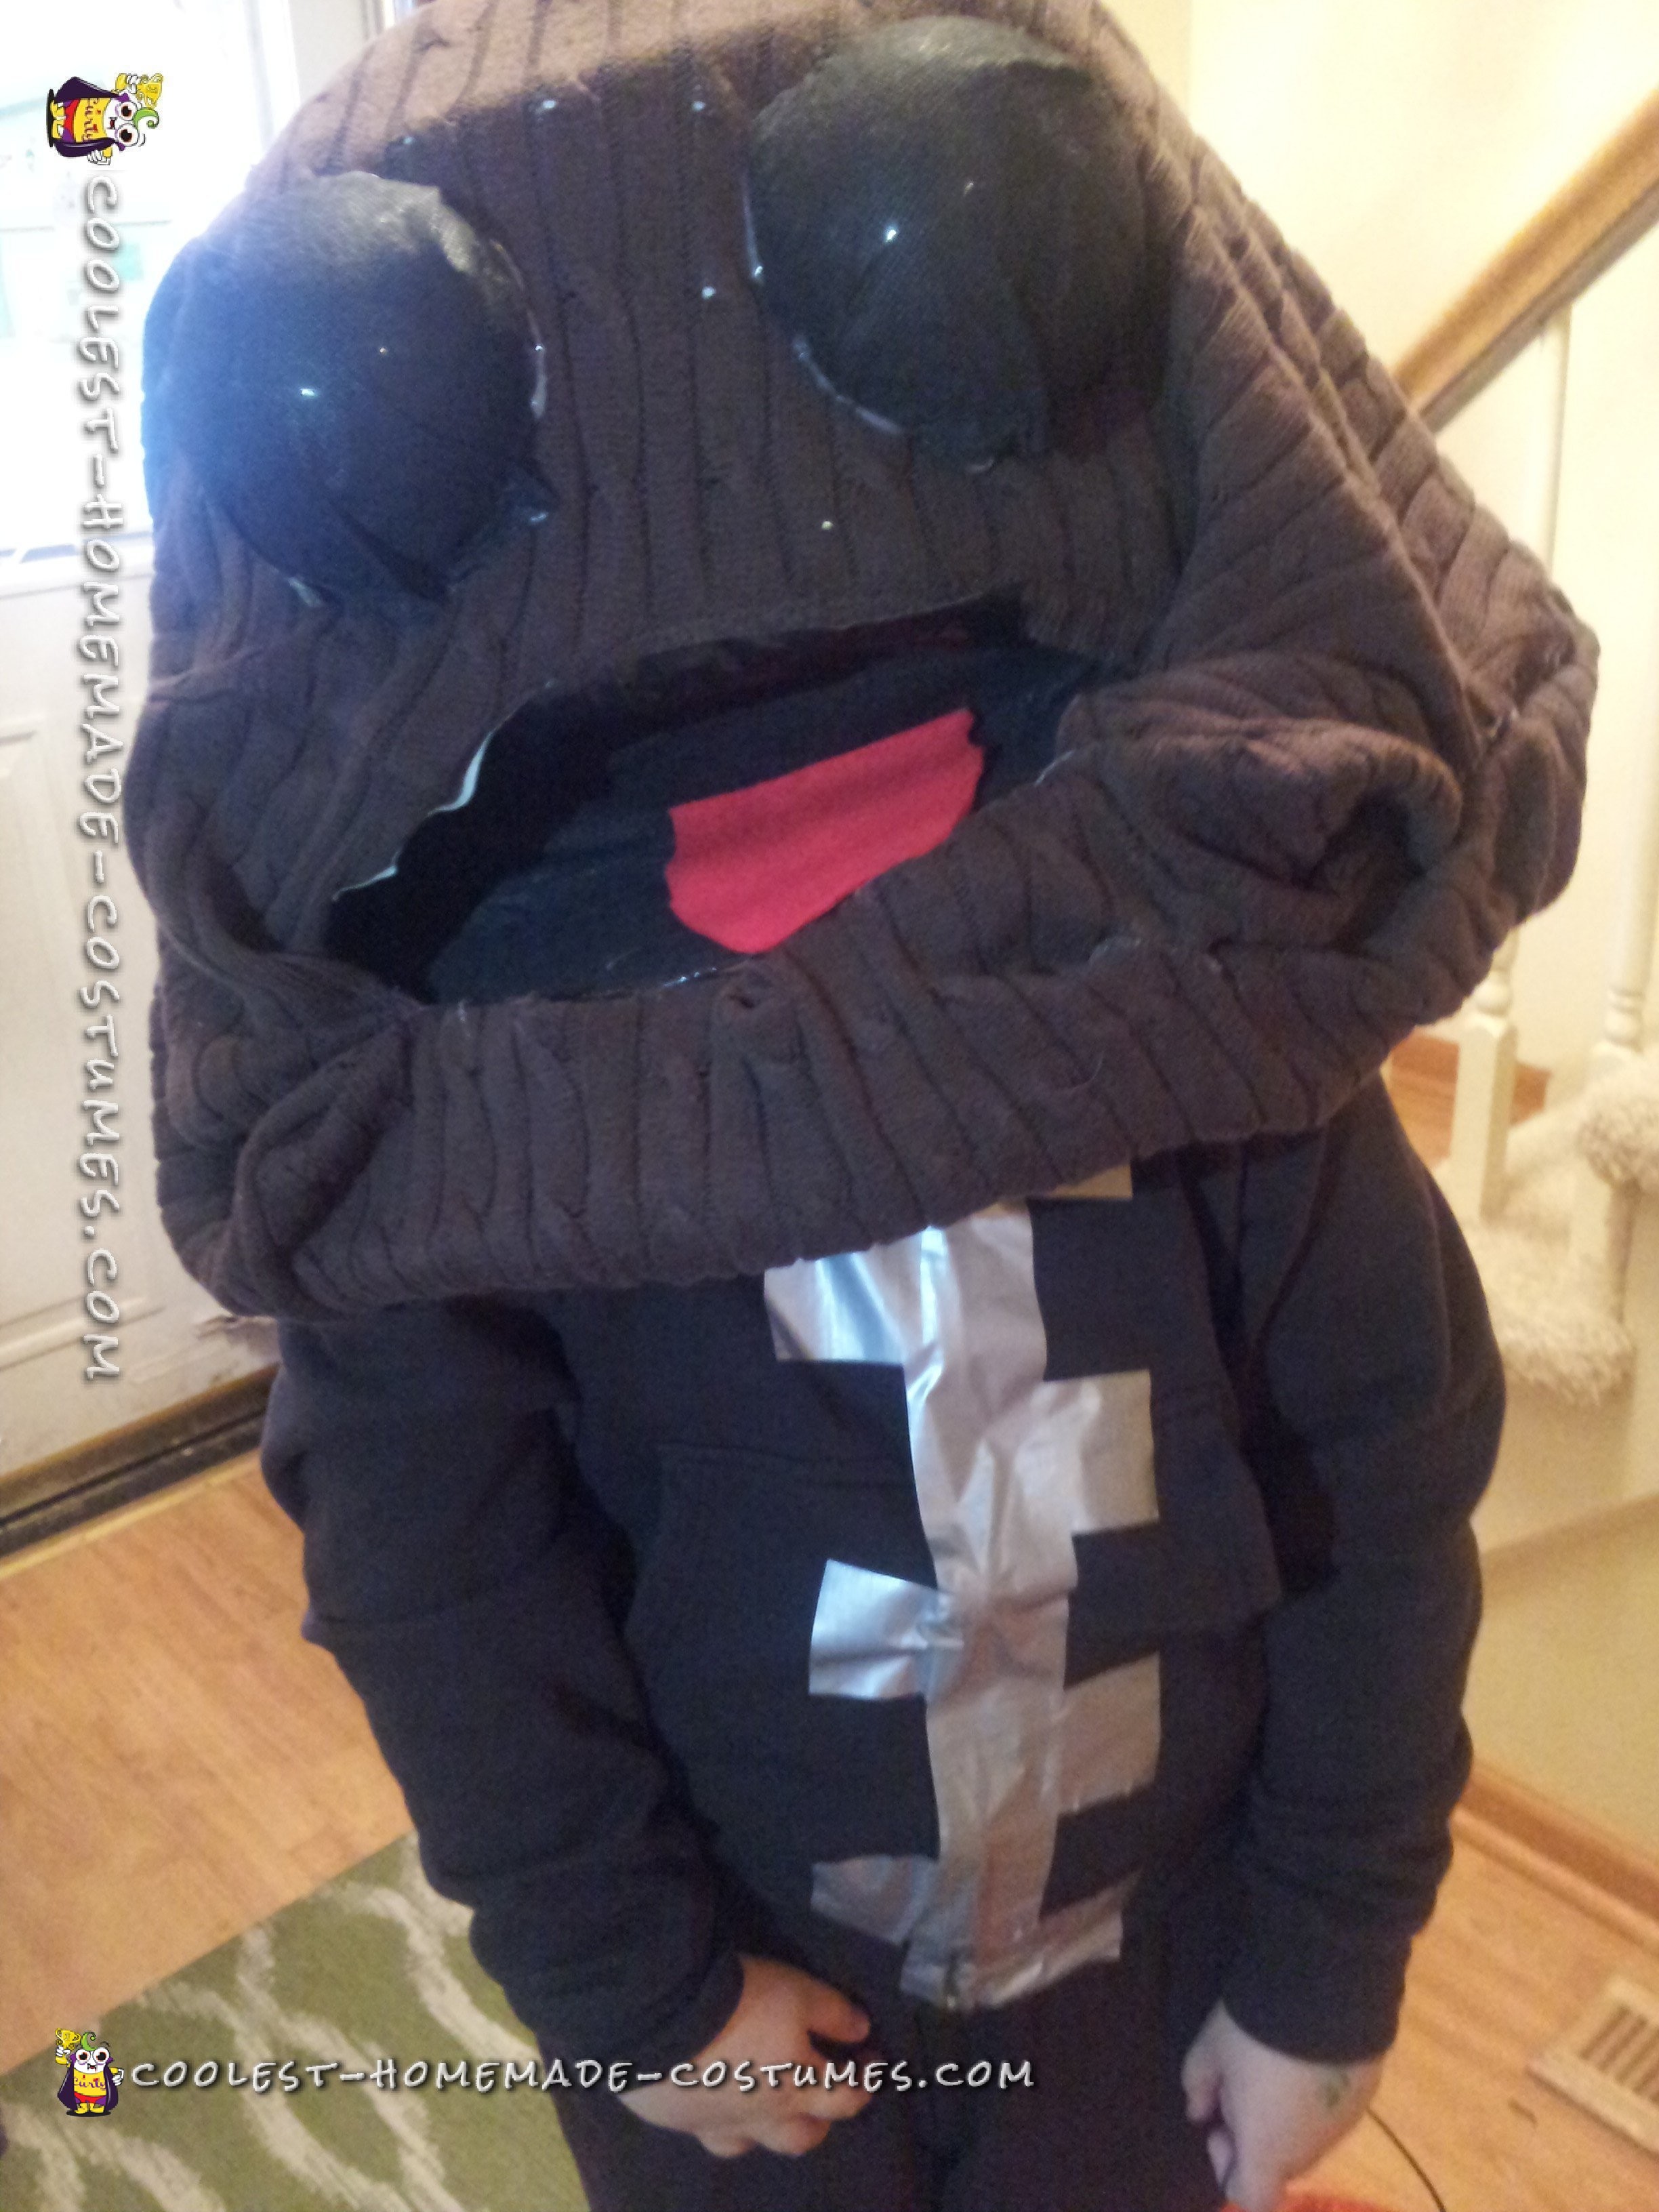 Adorable LittleBigPlanet Sackboy Costume